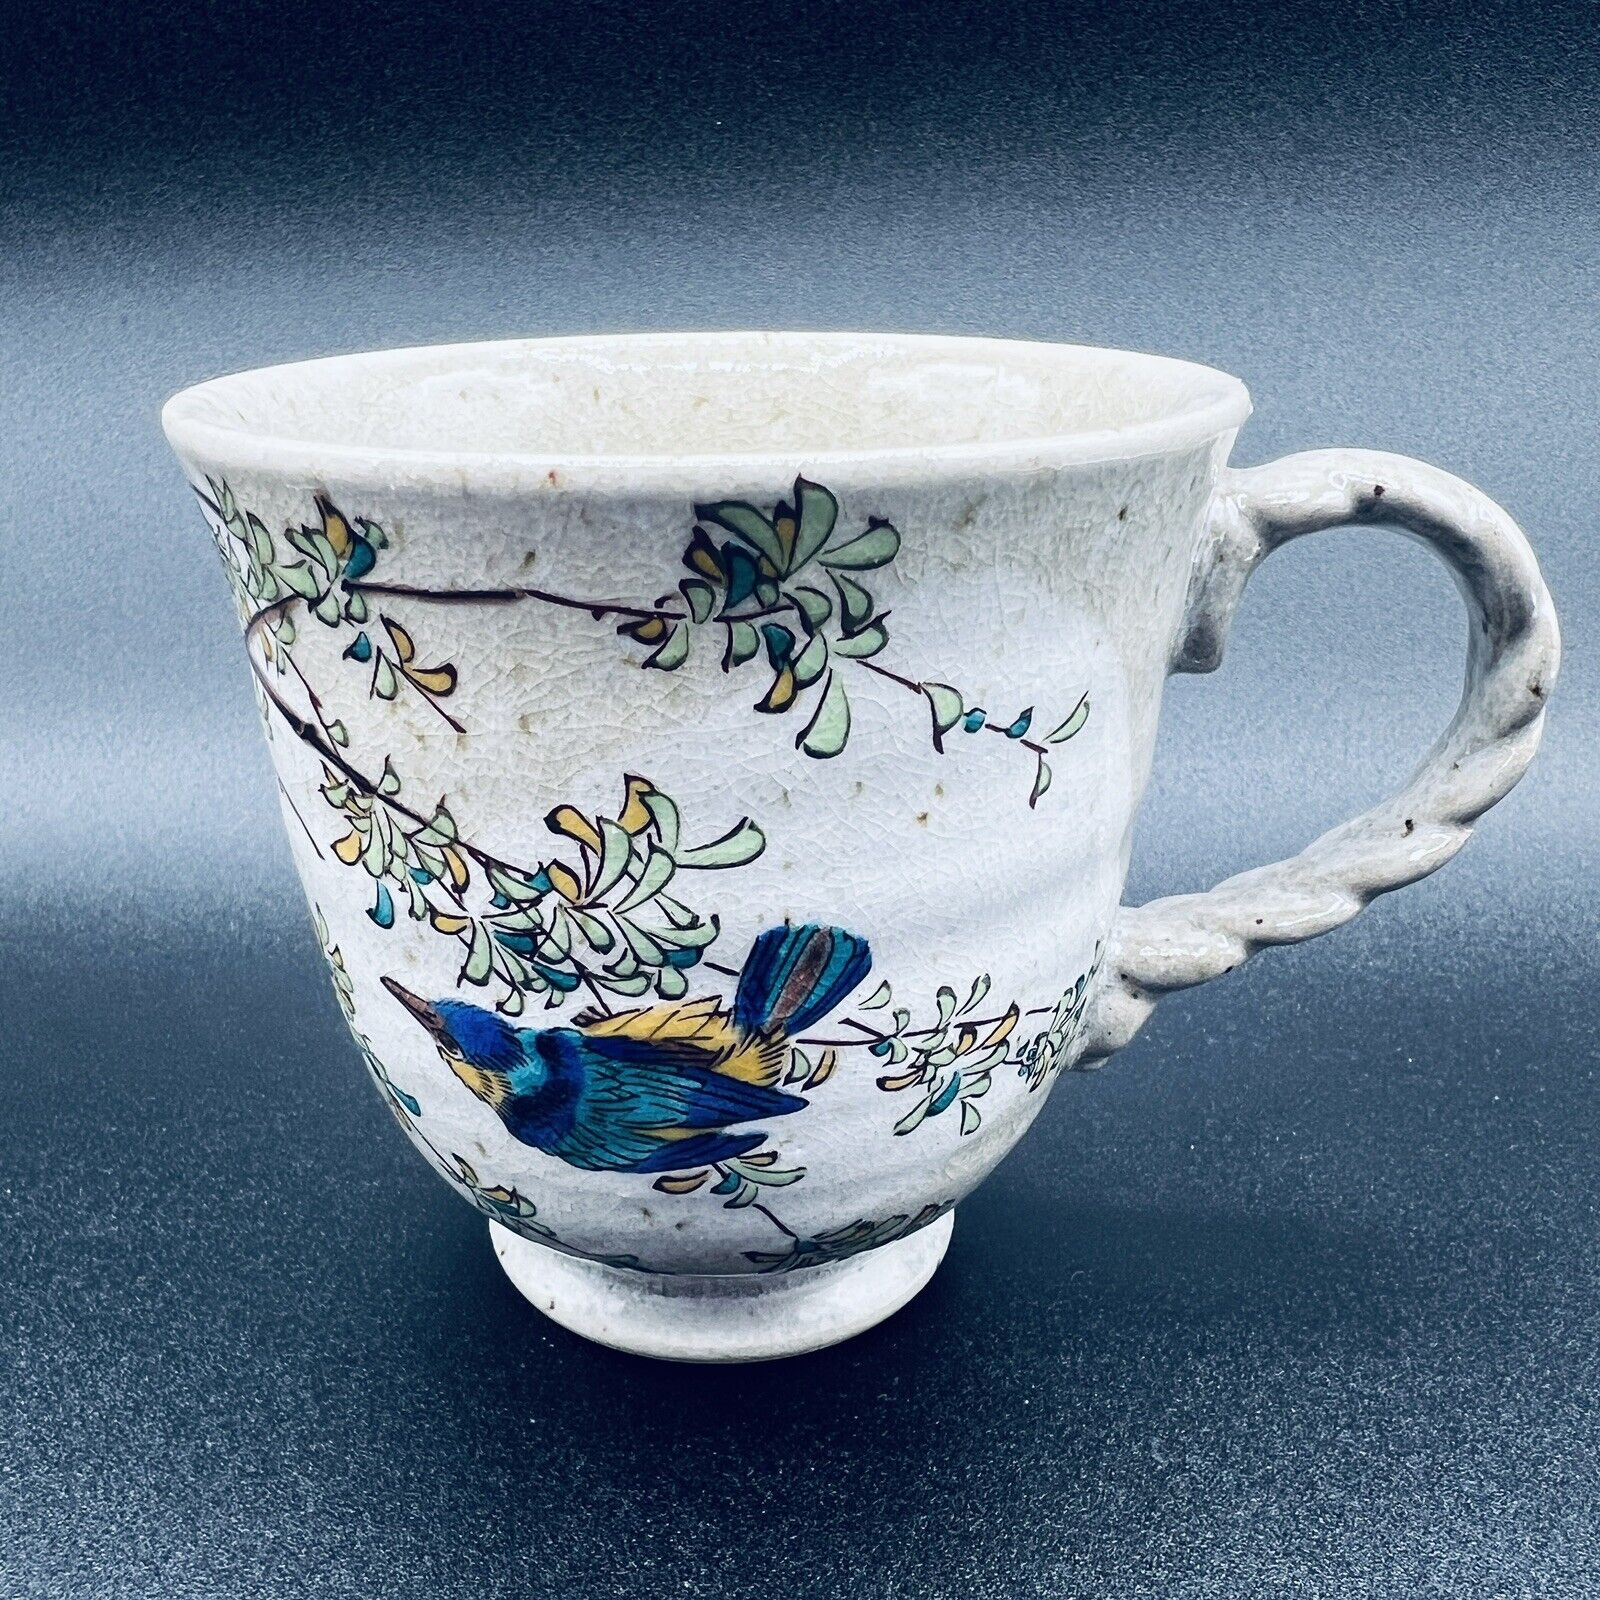 Kutani Yaki Ware Mug Tea Cup Kawasemi Kingfisher Bird Made in Japan Boxed Gift